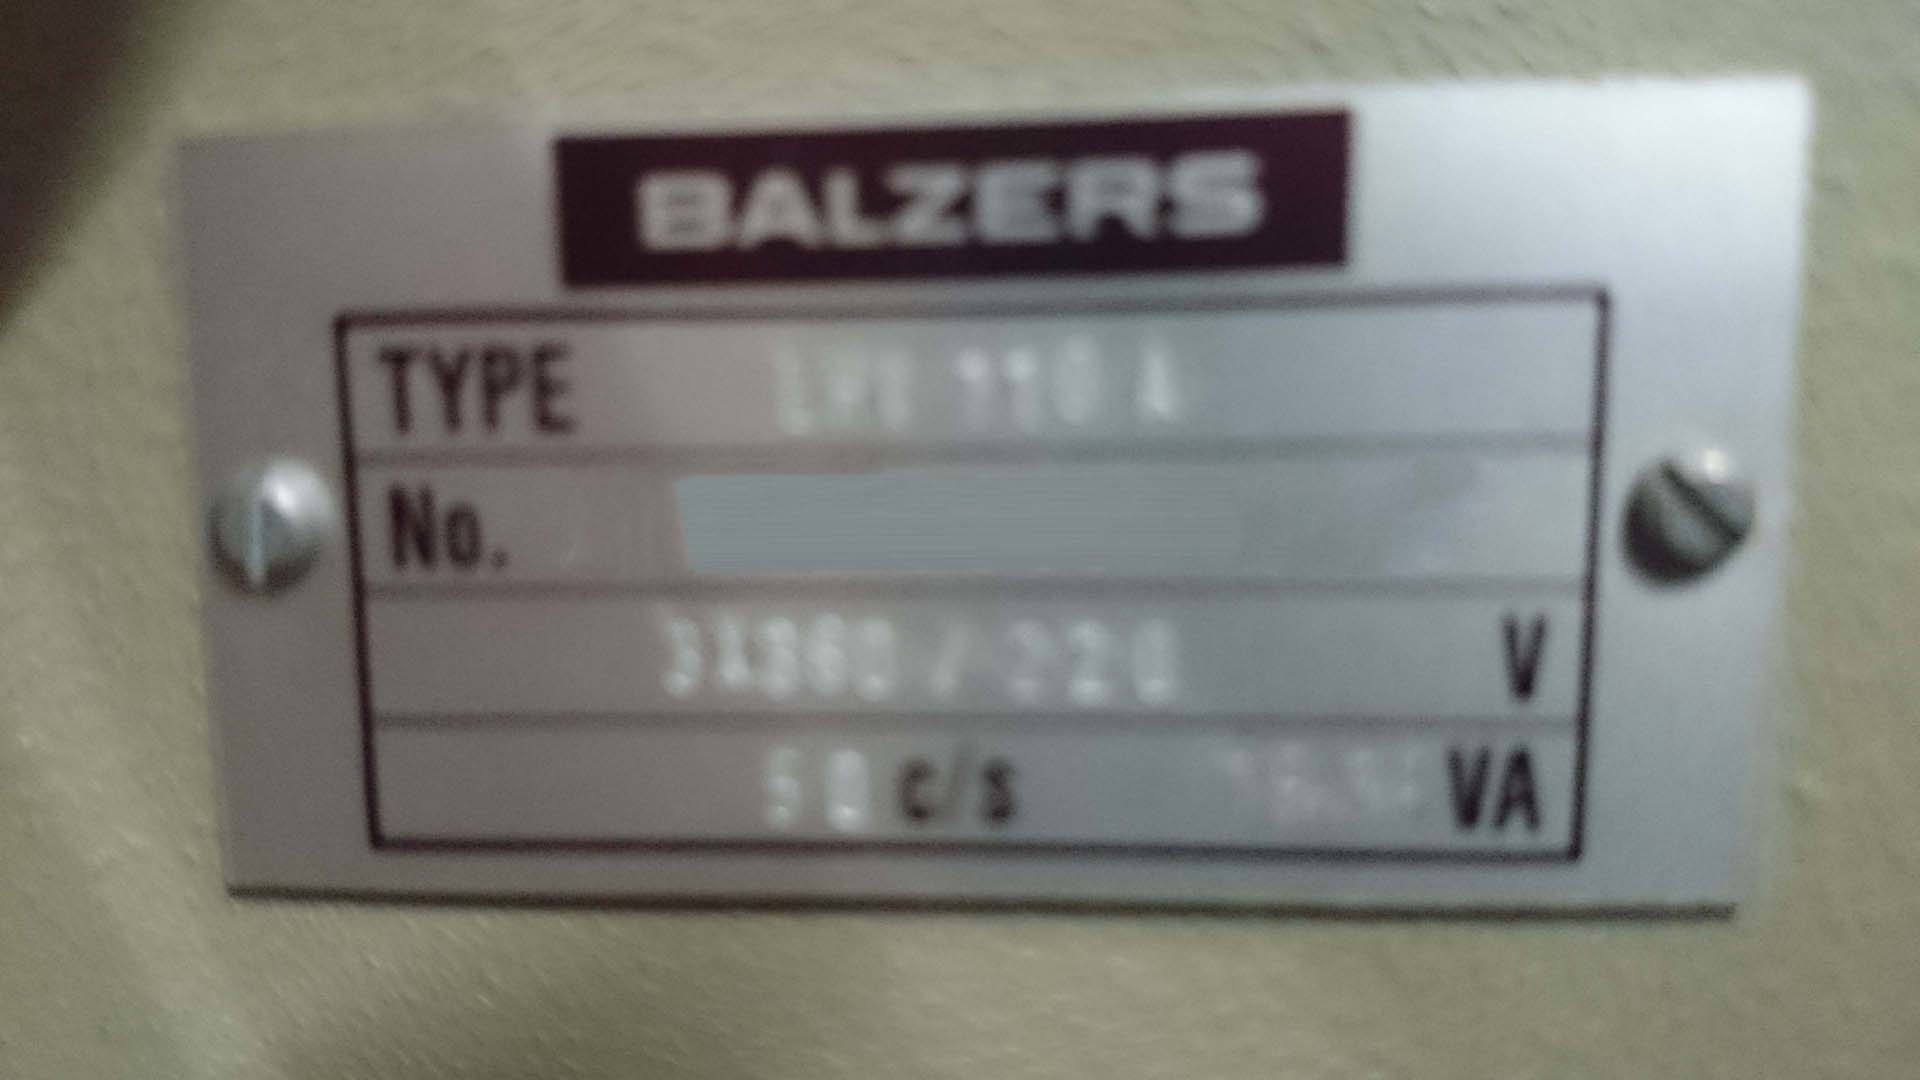 图为 已使用的 BALZERS 760 待售